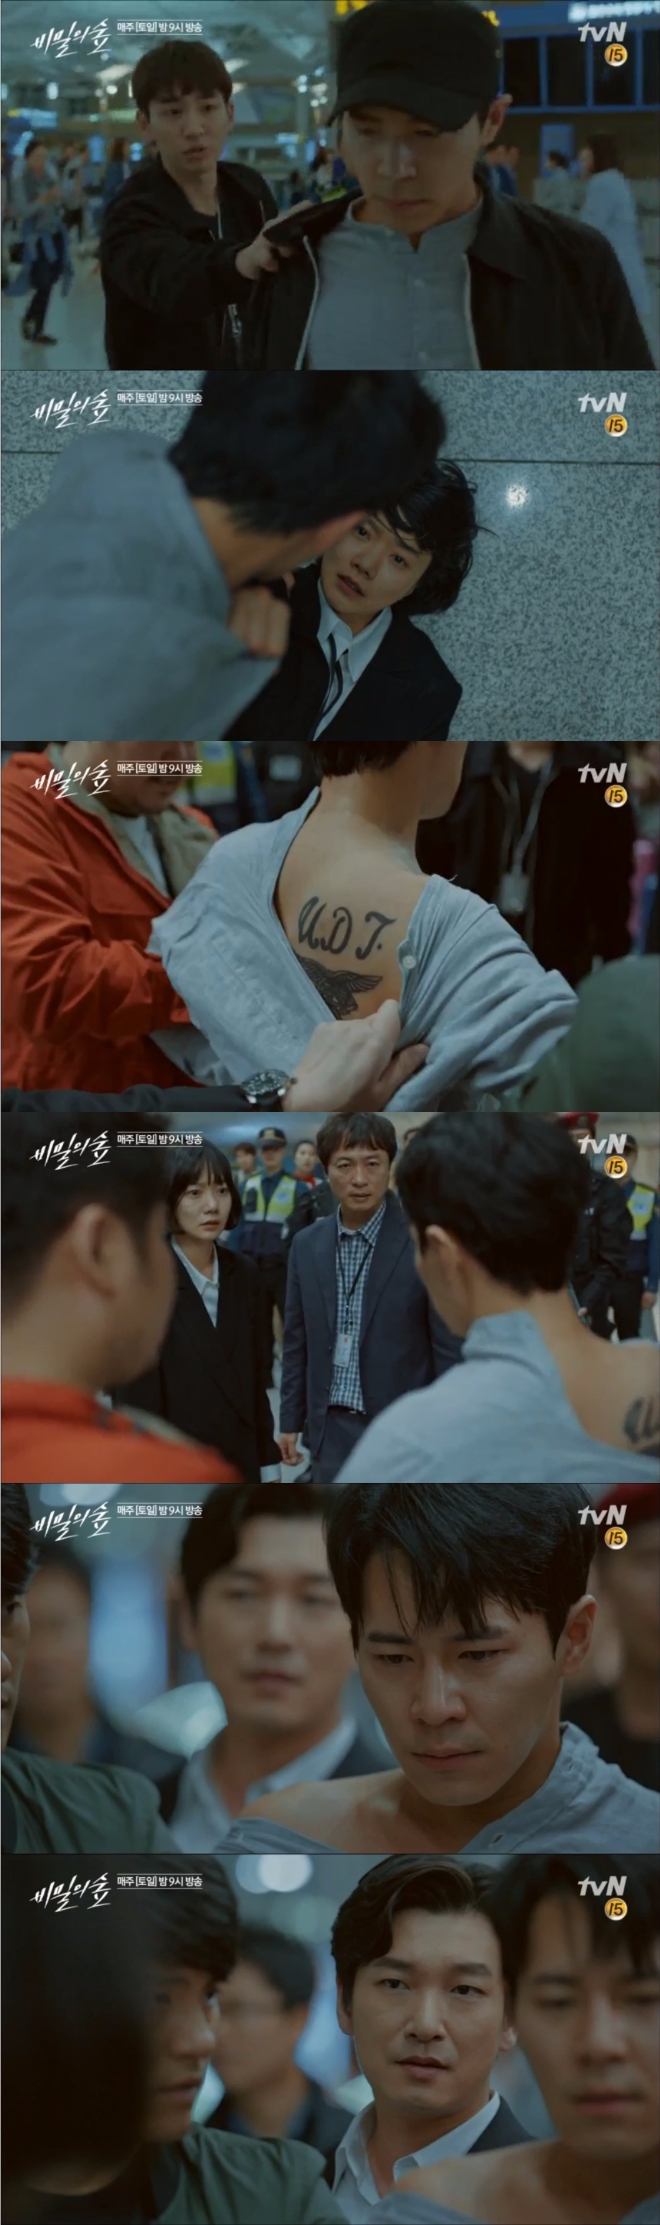 23일 밤 방송된 tvN 토 일드라마 '비밀의 숲' 14에서는 윤세원(이규형) 과장이 체포되는 극적인 반전이 그려졌다. 사진=tvN 방송 캡처